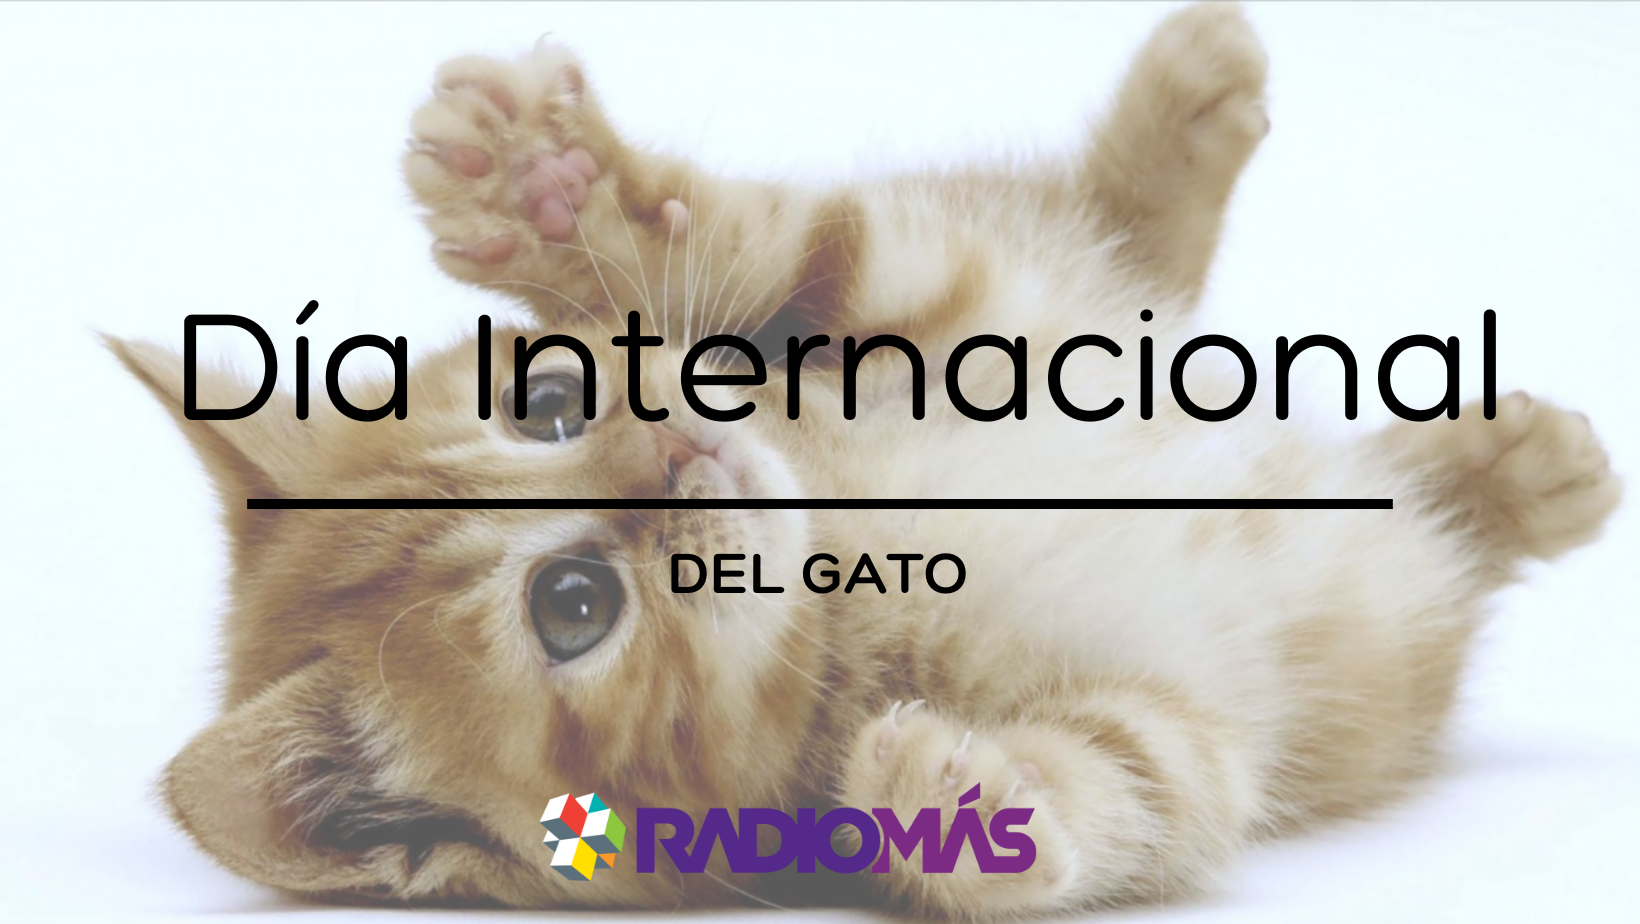 Día internacional del gato